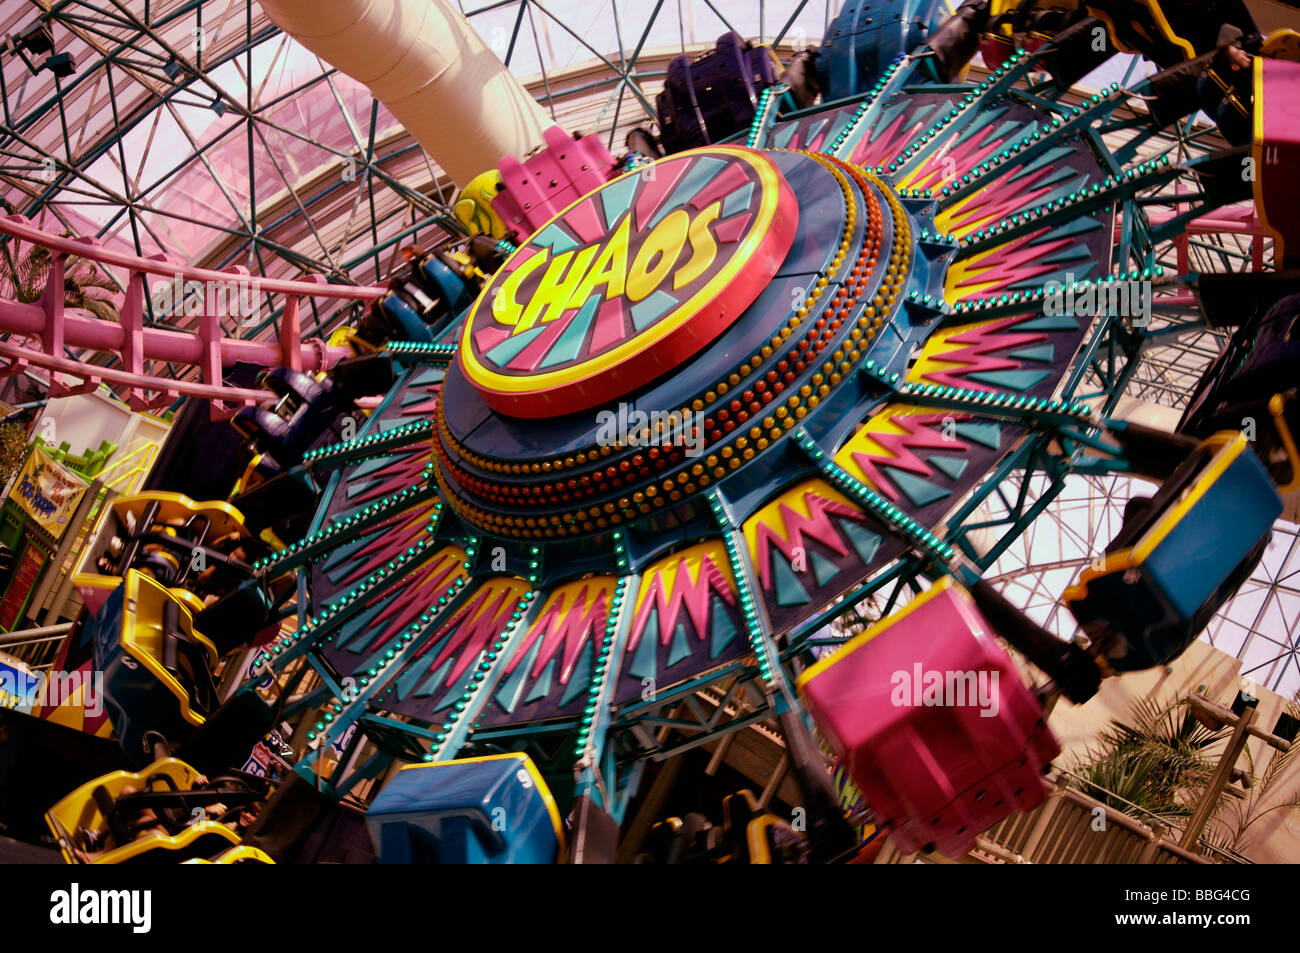 Chaos Fun Fair Ride At Circus Circus Las Vegas Stock Photo